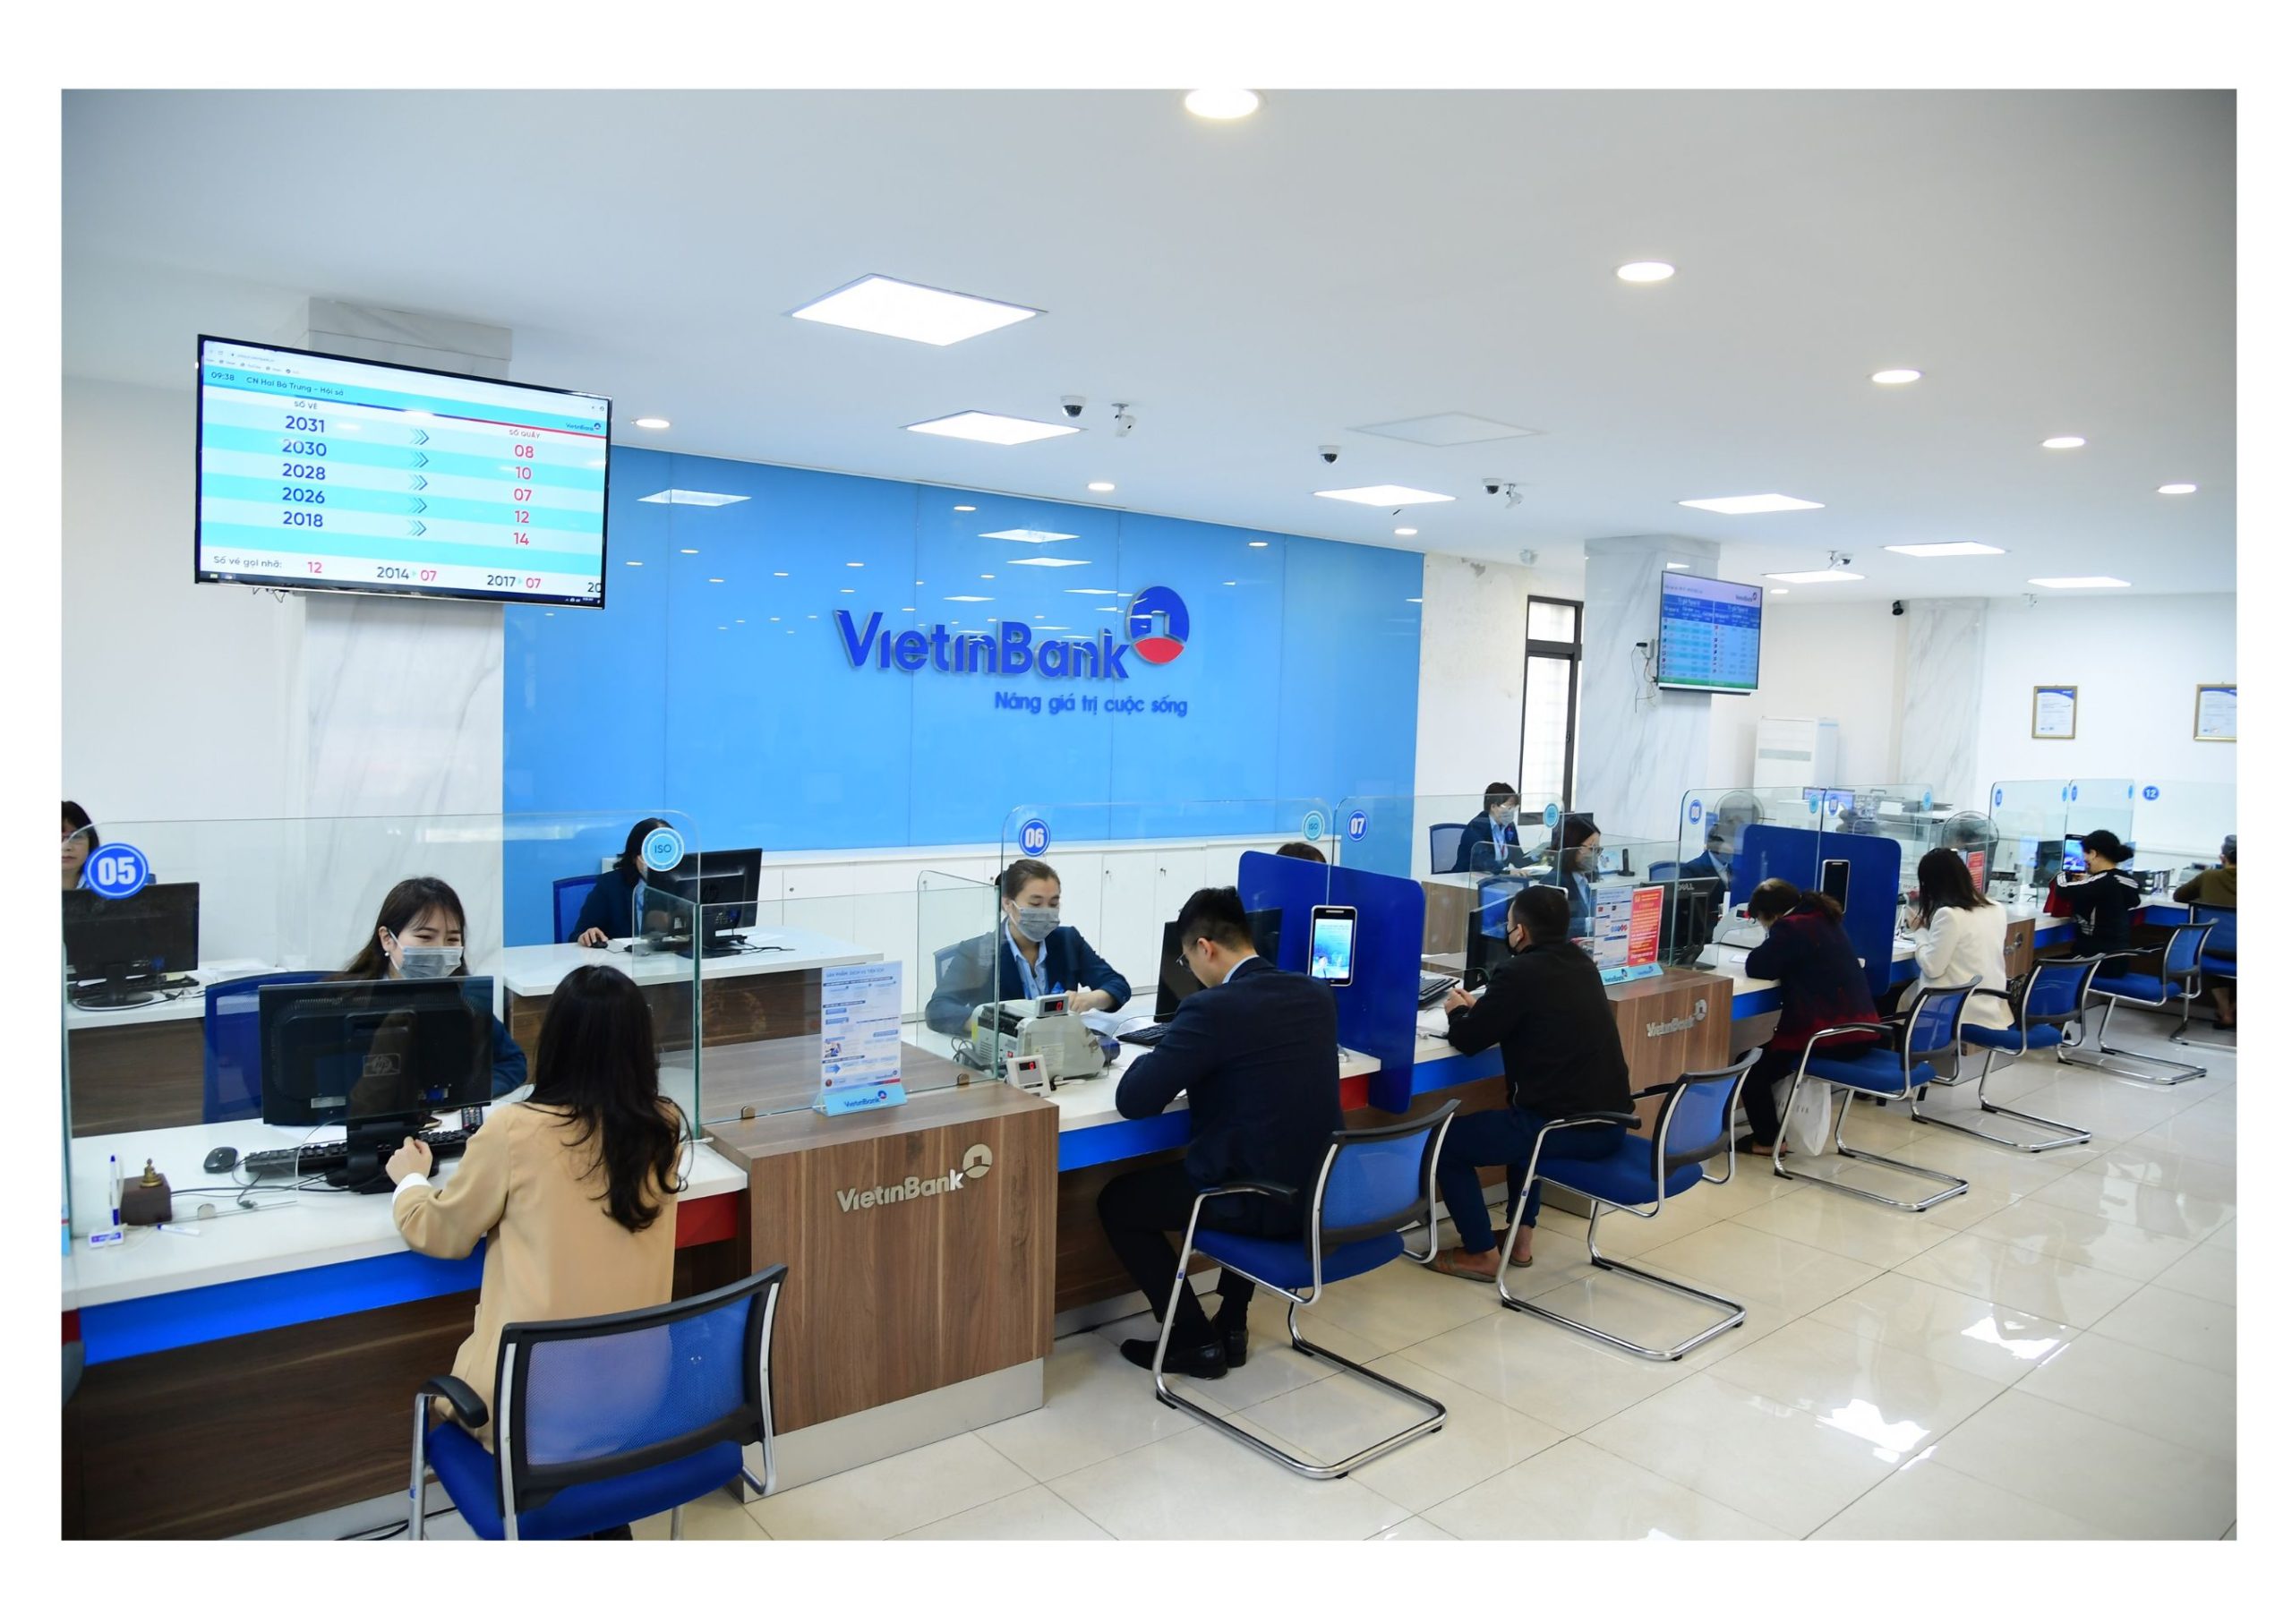 Hướng dẫn vay tiền ngân hàng Vietinbank không cần thế chấp